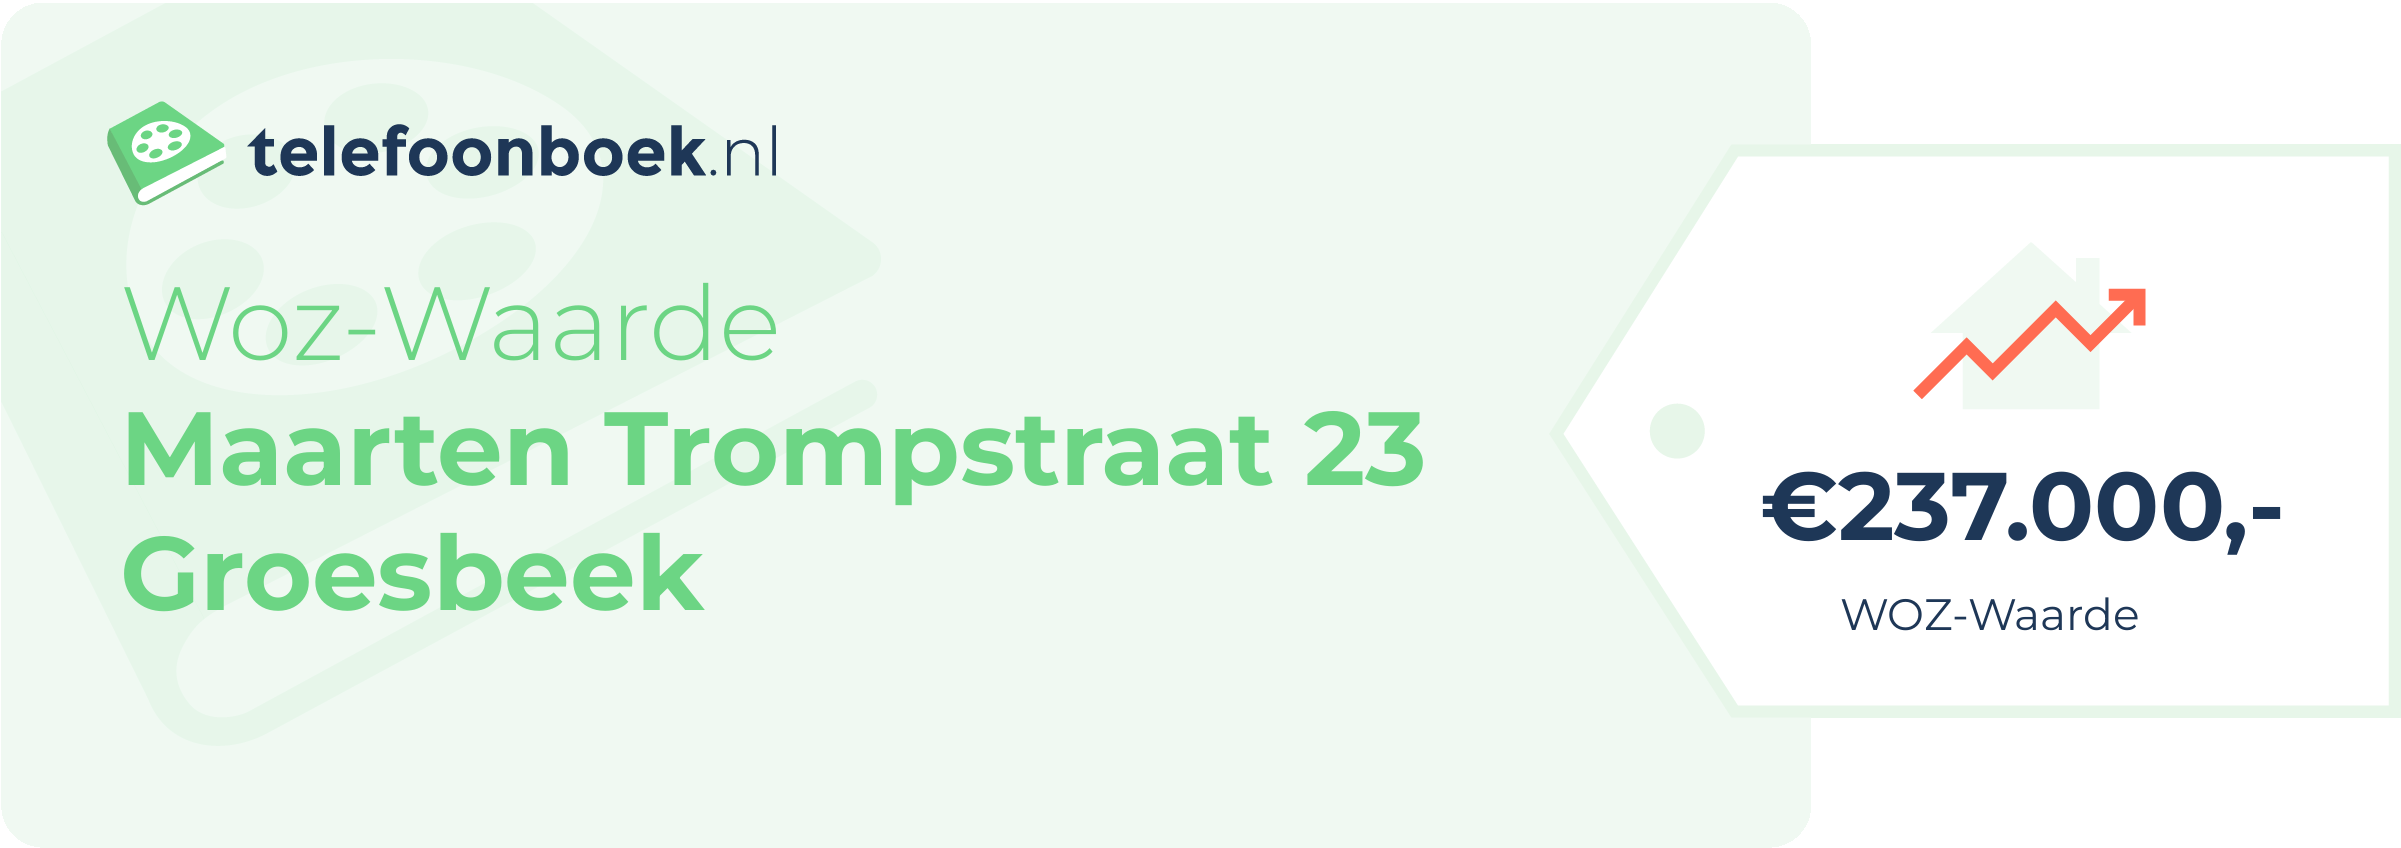 WOZ-waarde Maarten Trompstraat 23 Groesbeek